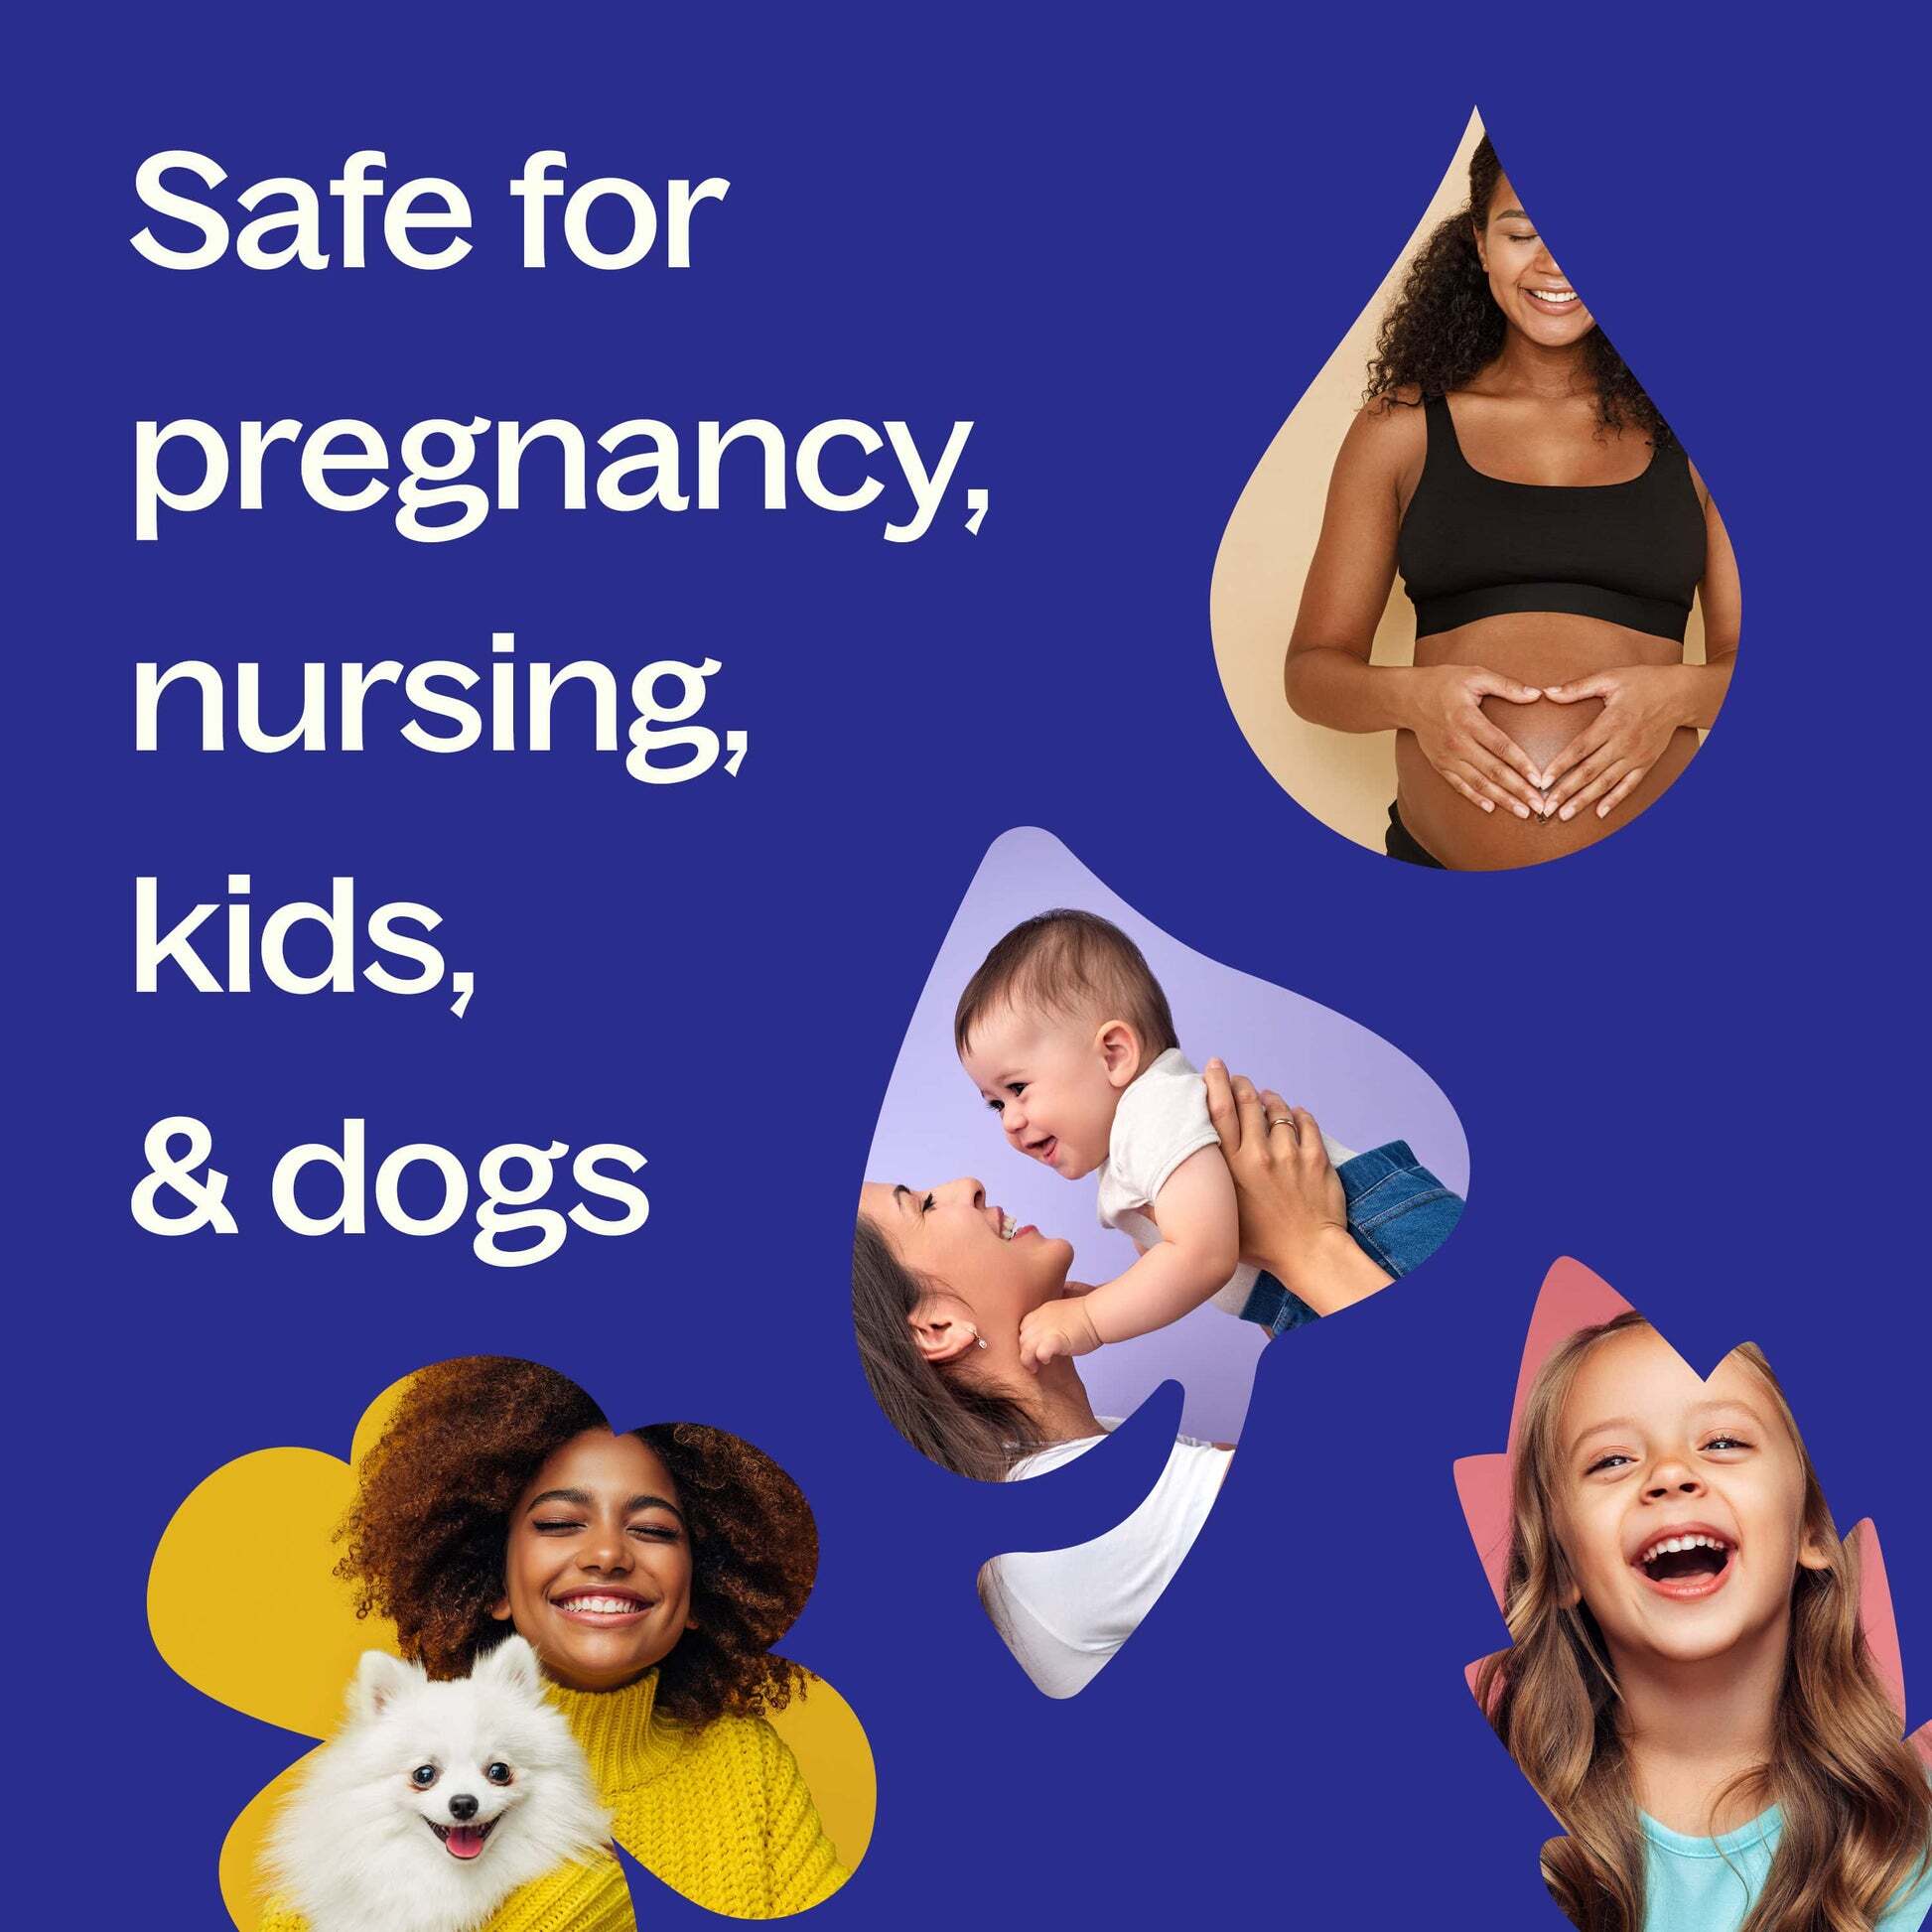 Safety-Pregnancy_Nursing_Kids_Dogs_1_-min_74d2a71d-5a76-4ef6-9eb1-ce097d9b0100_1946x